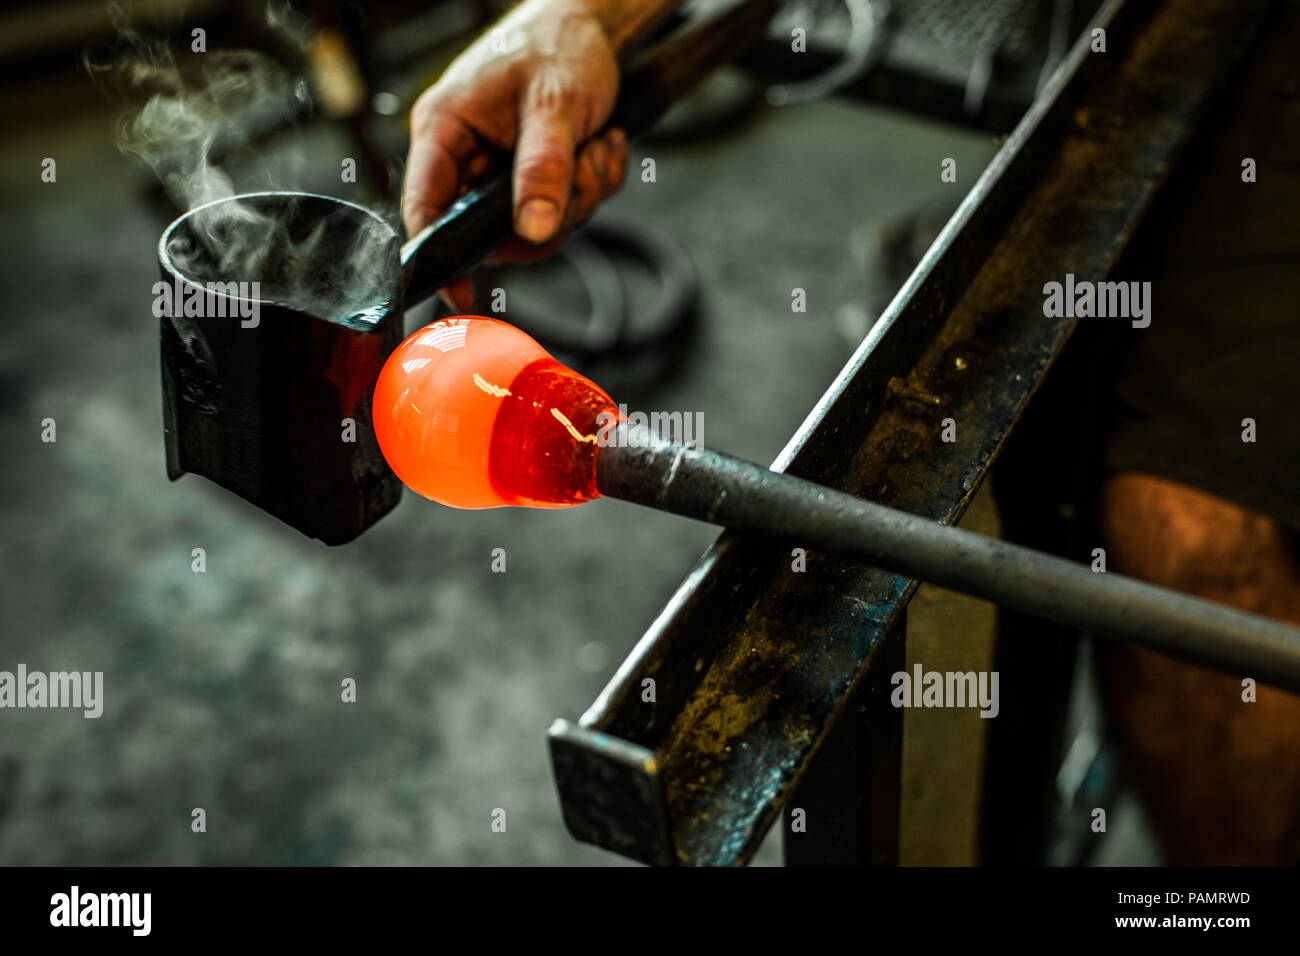 Souffleur de verre l'homme travailler avec orange chaud pour faire un verre  sur verre soufflé Photo Stock - Alamy